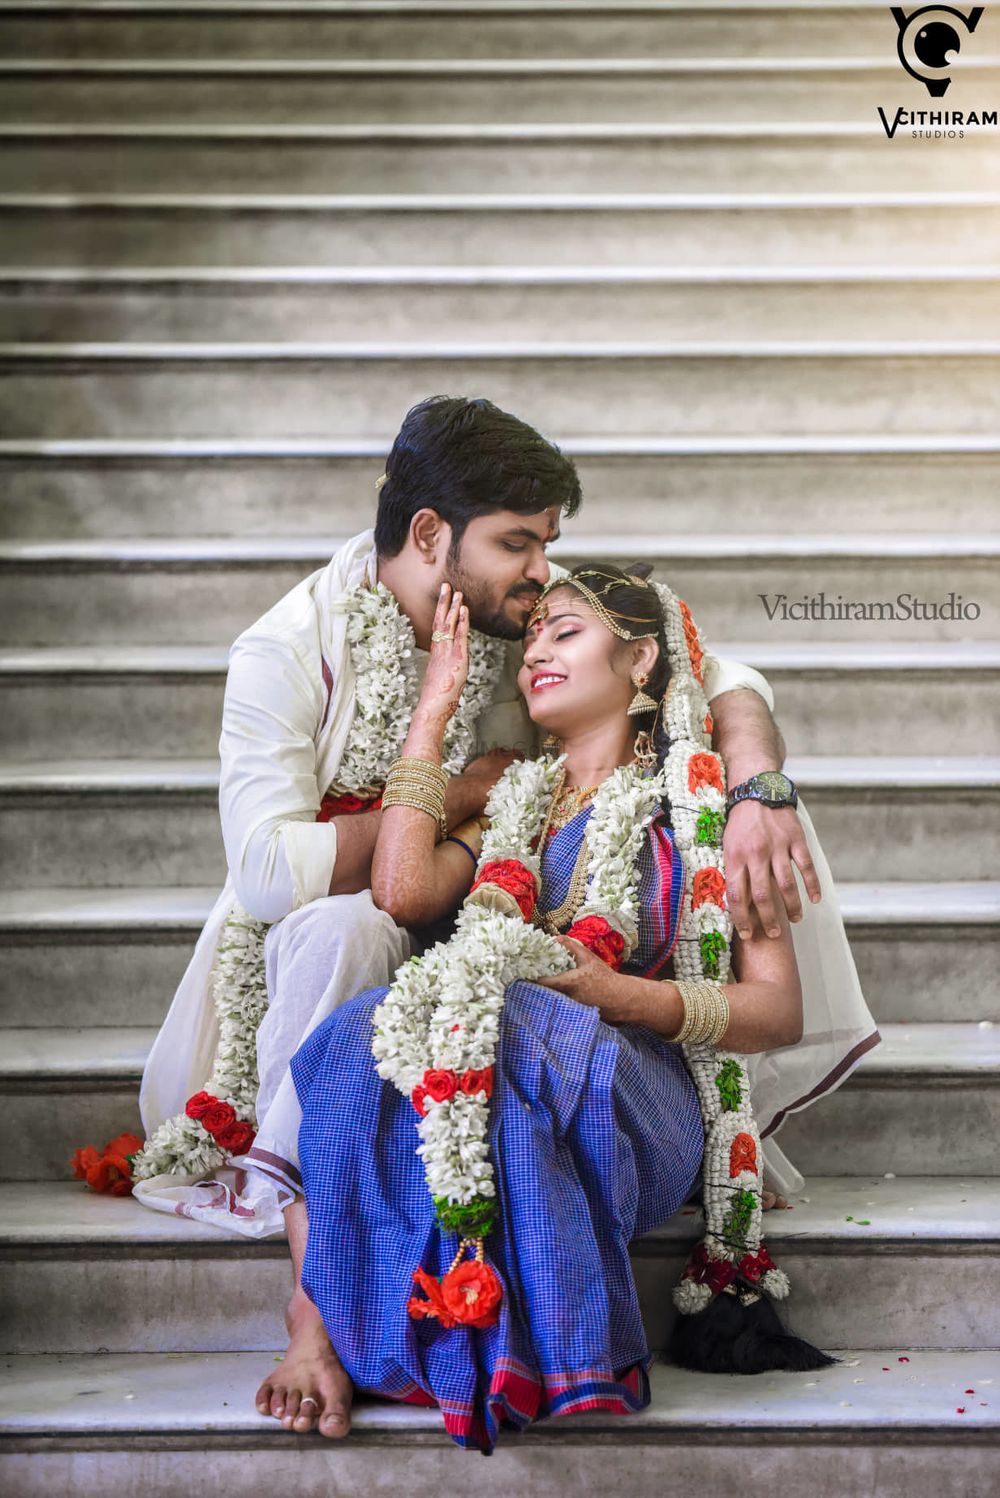 Photo From Hindu wedding - By Vicithiram Studio